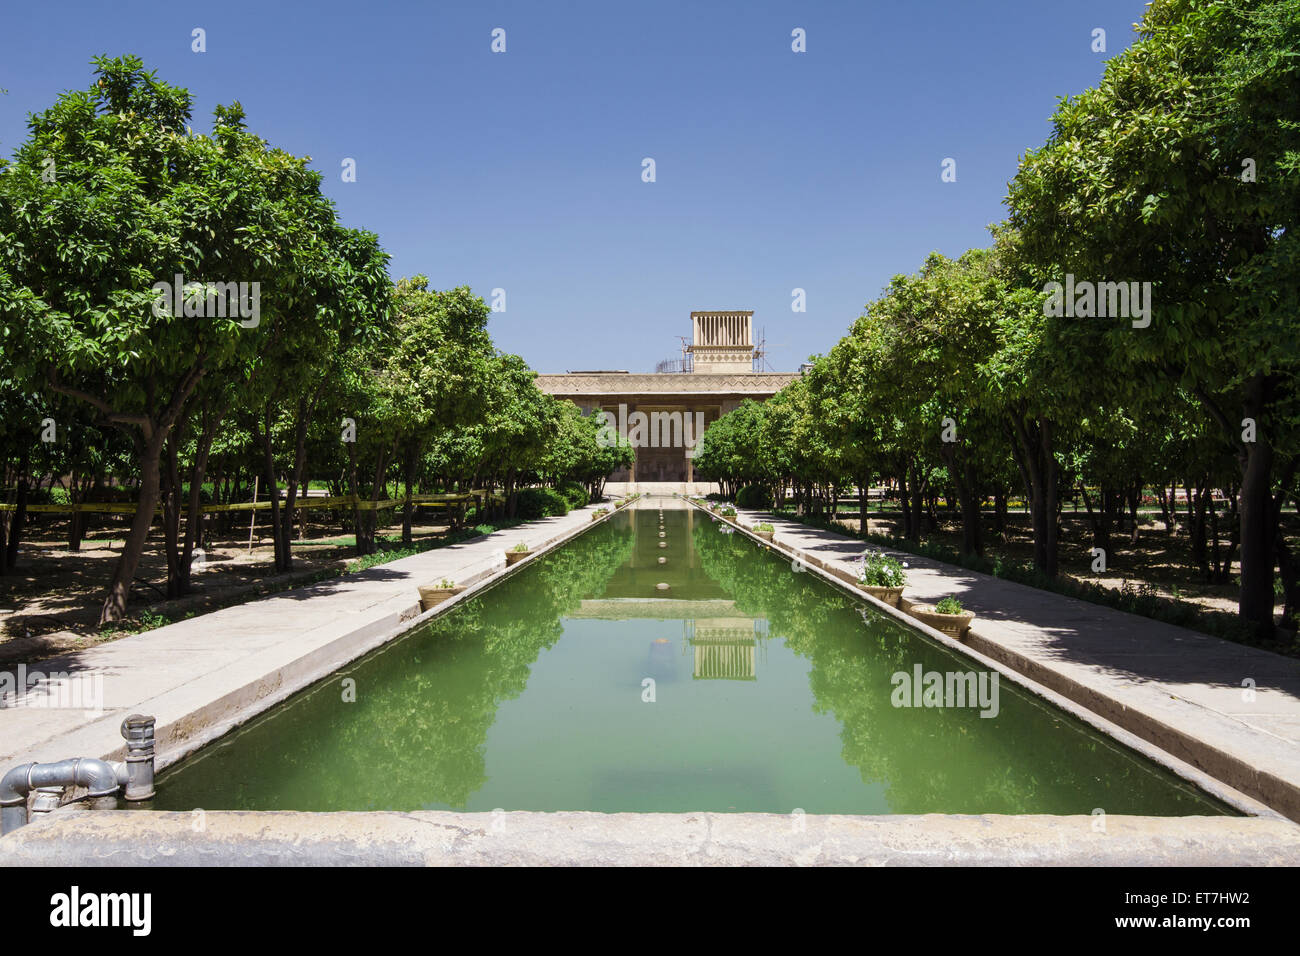 L'Iran, Shiraz, vue d'Arg de Karim Khan avec piscine à l'avant-plan Banque D'Images